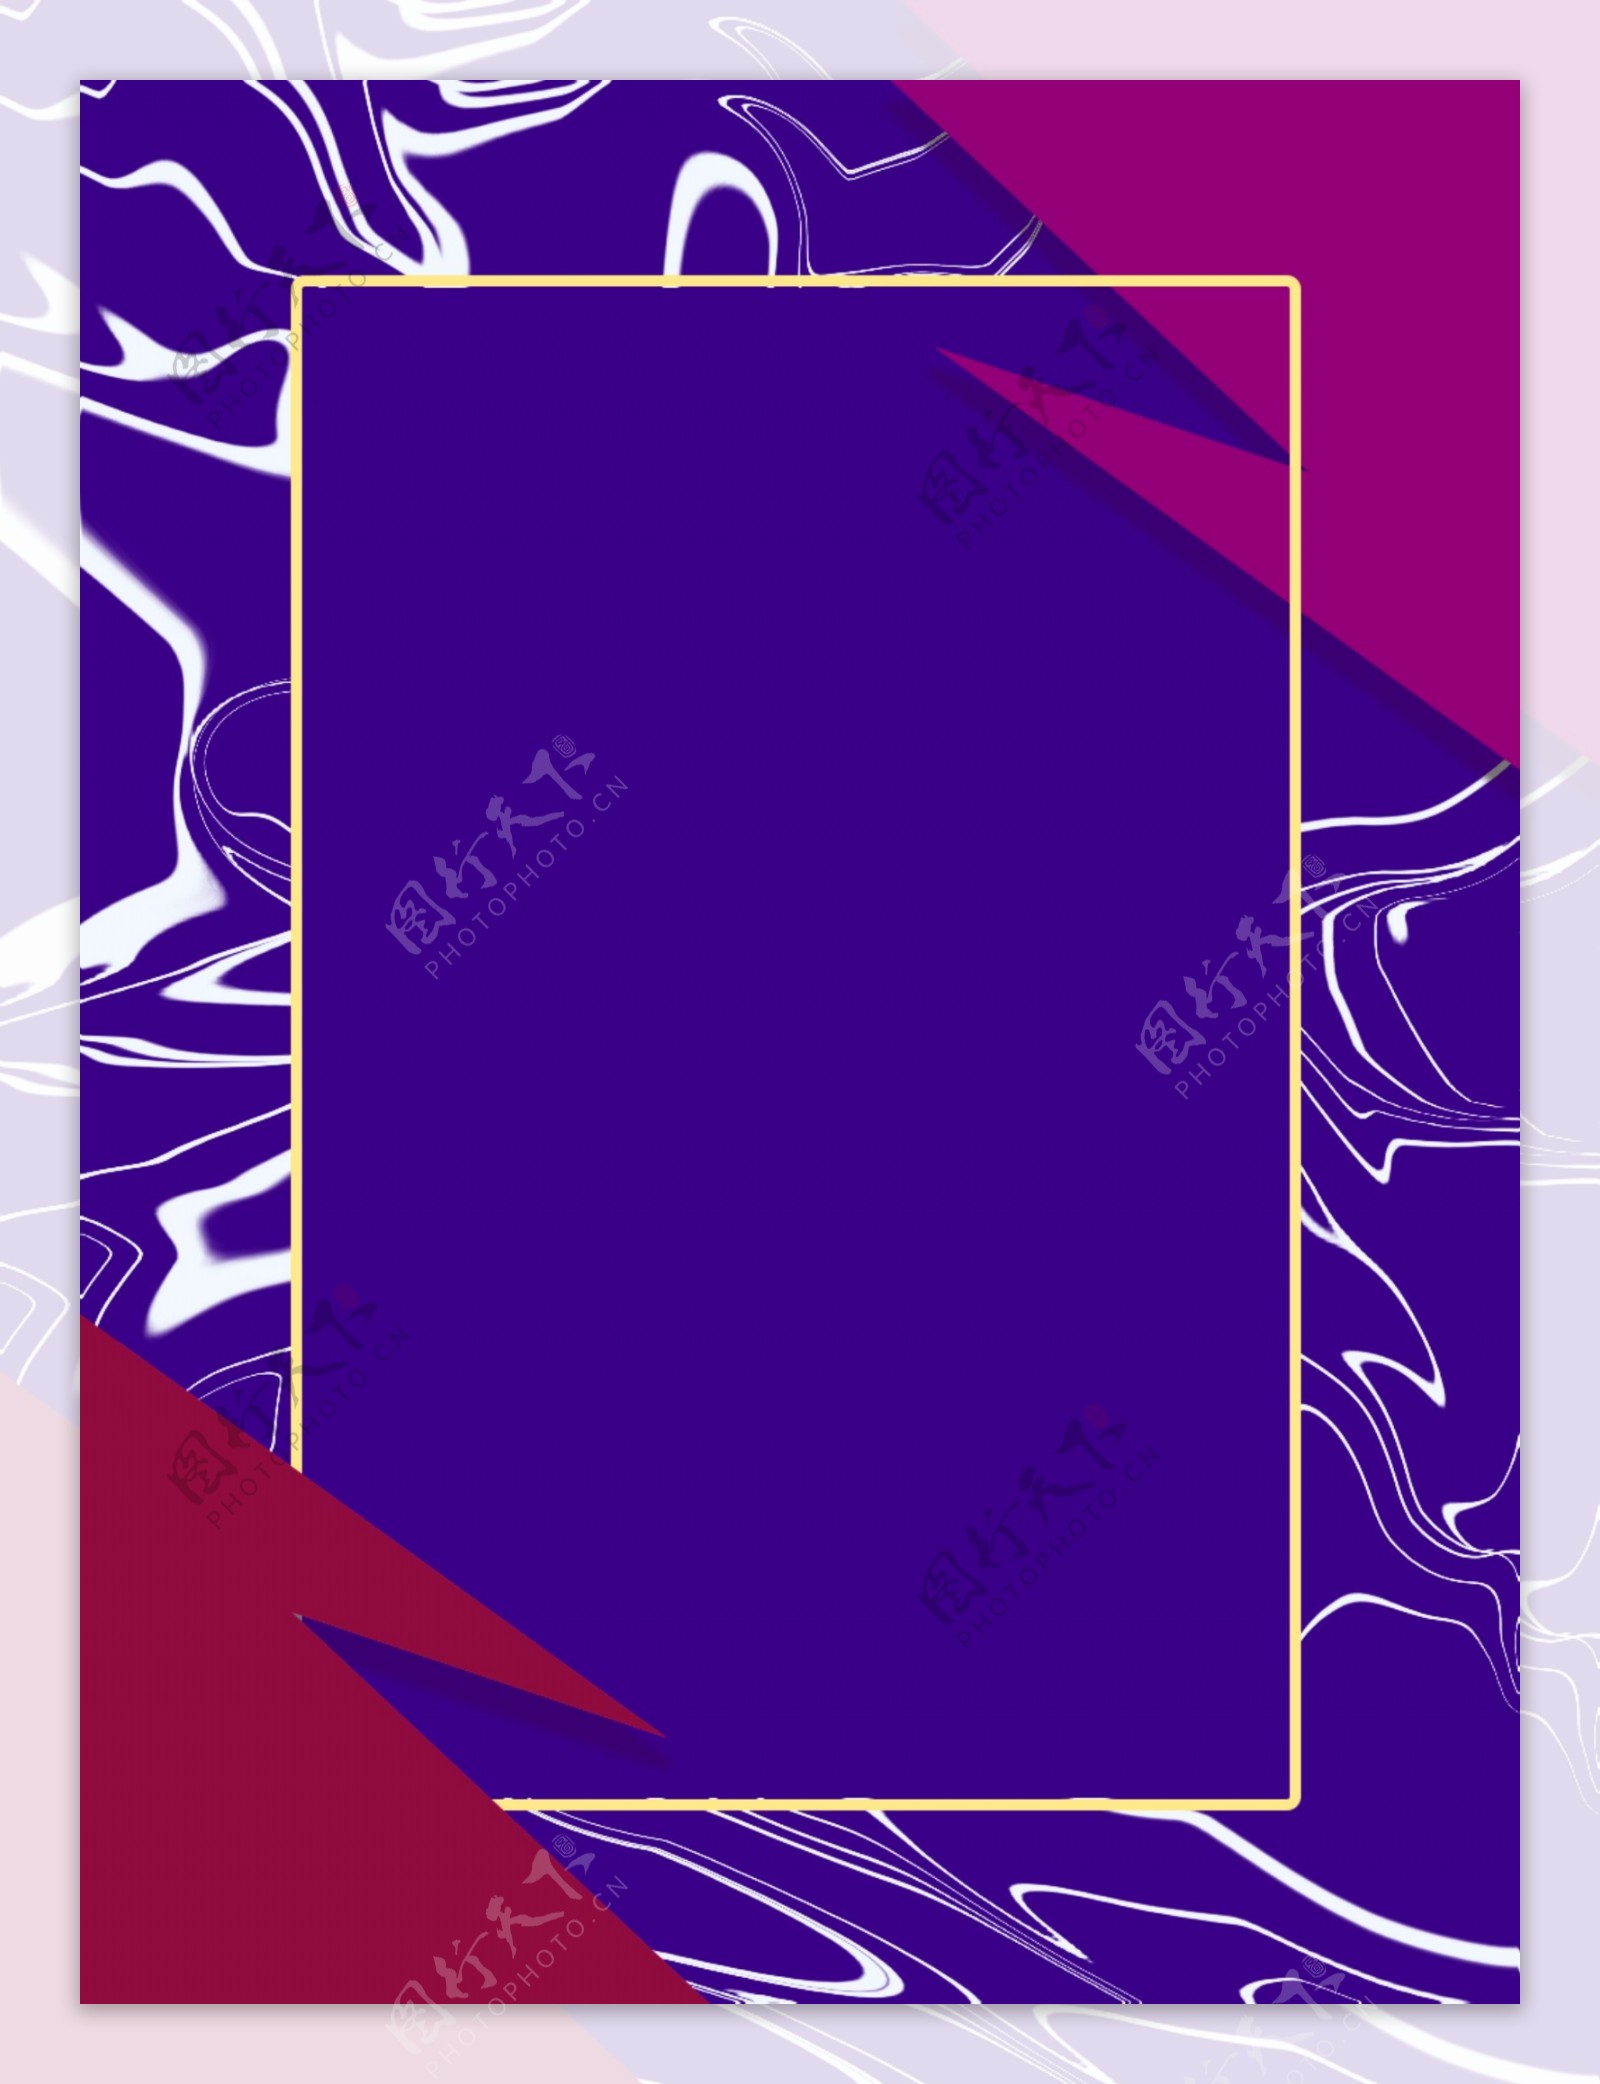 创意时尚紫色红色搭色边框背景